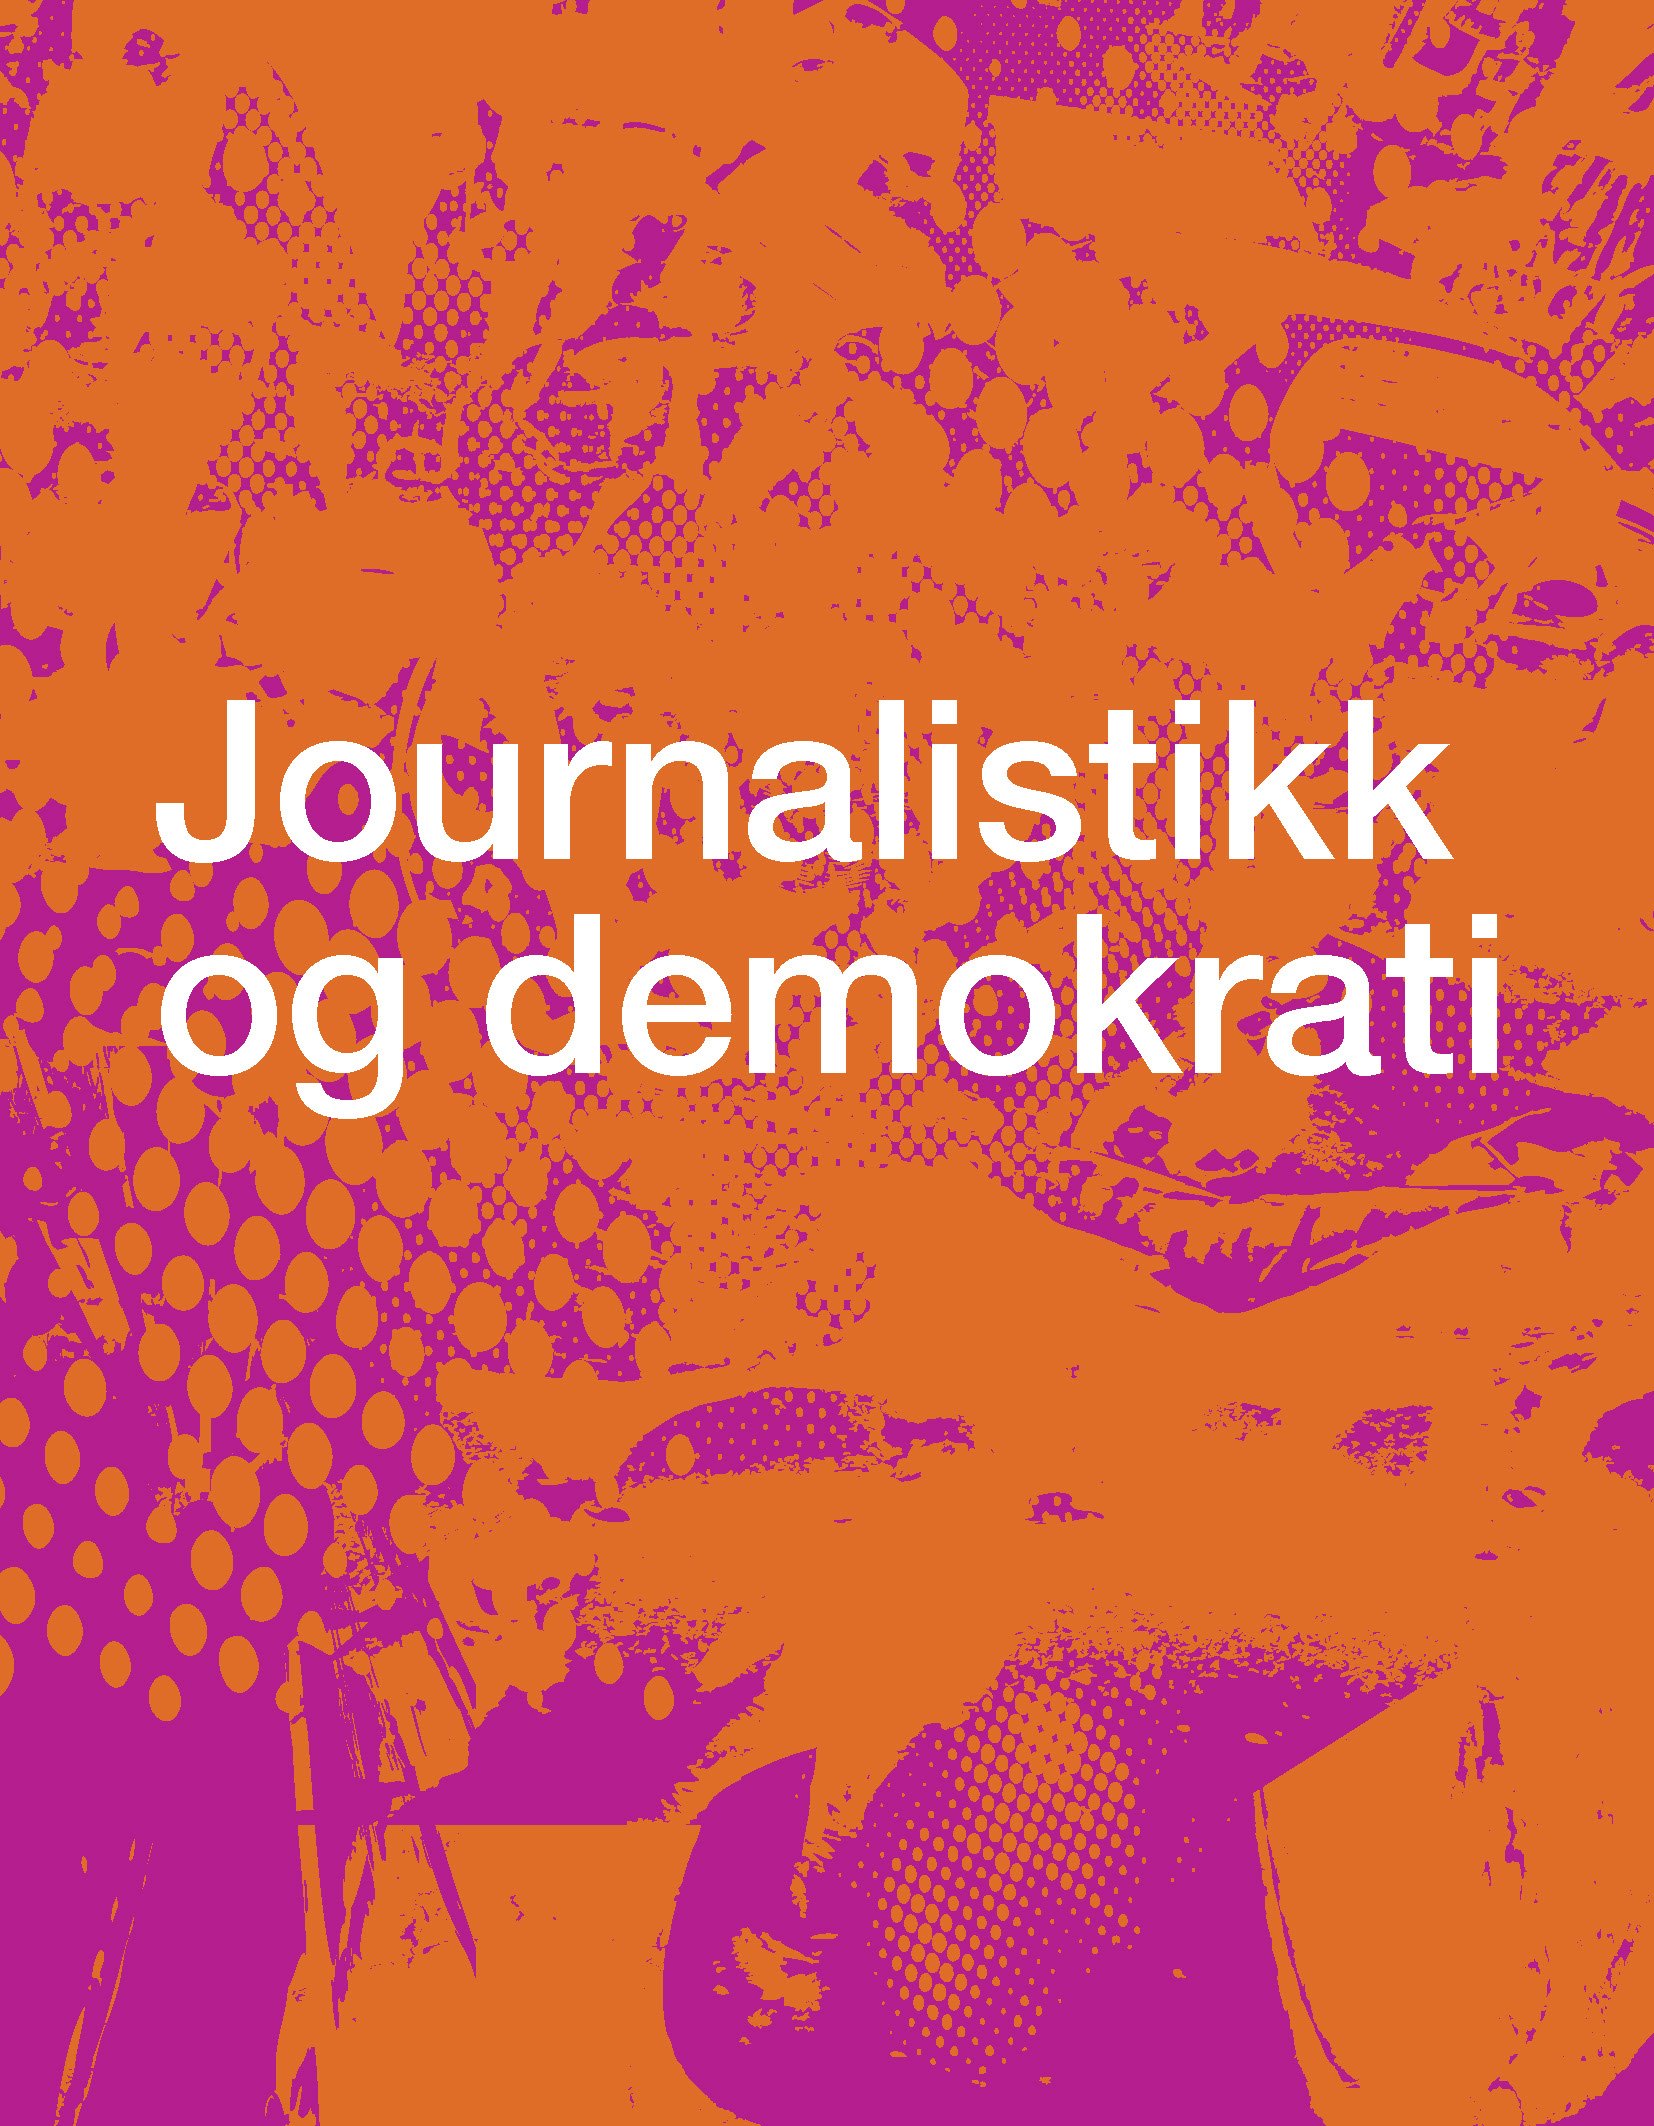 Norsk kvalitetsjournalistikk bilde